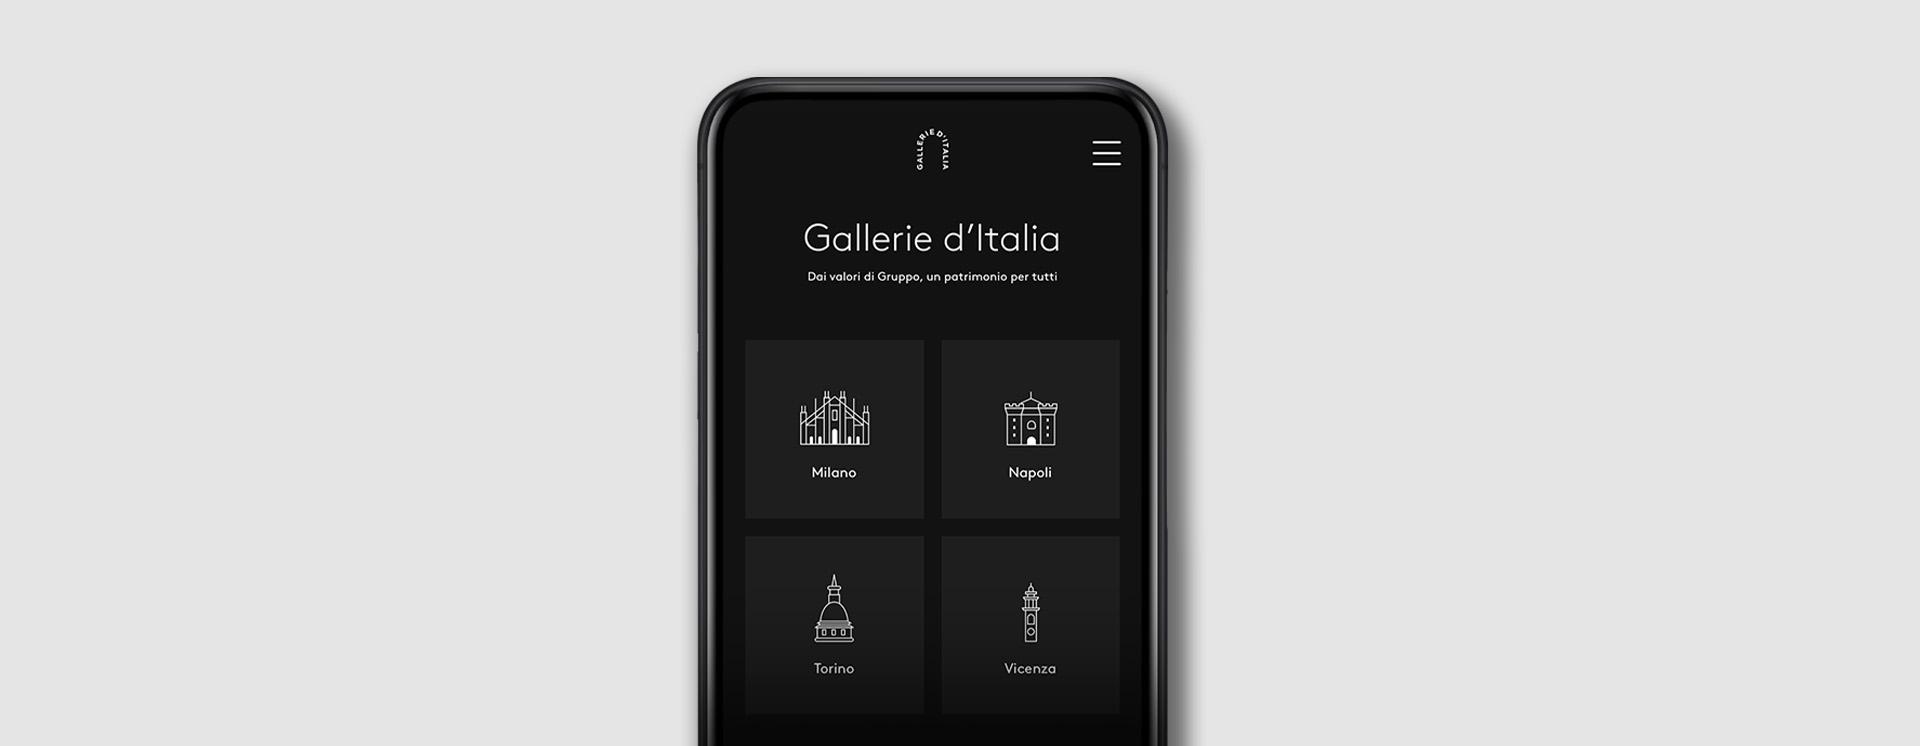 App gallerie d'italia